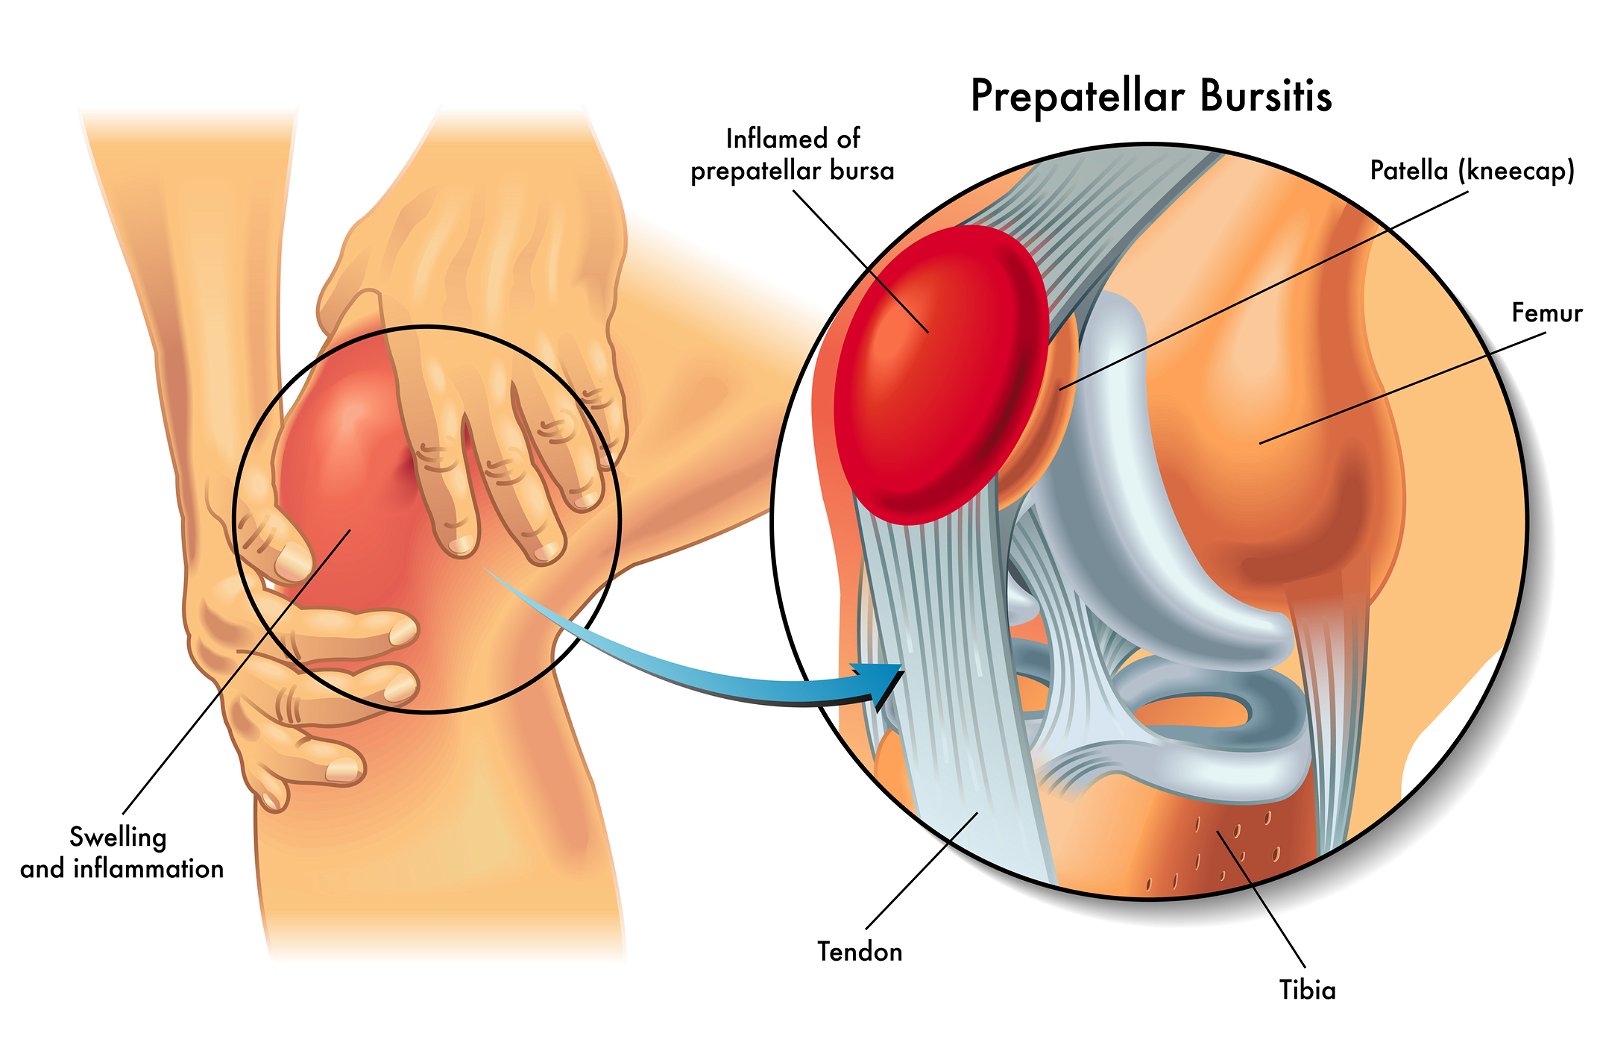 Prepatelarni burzitis kolena